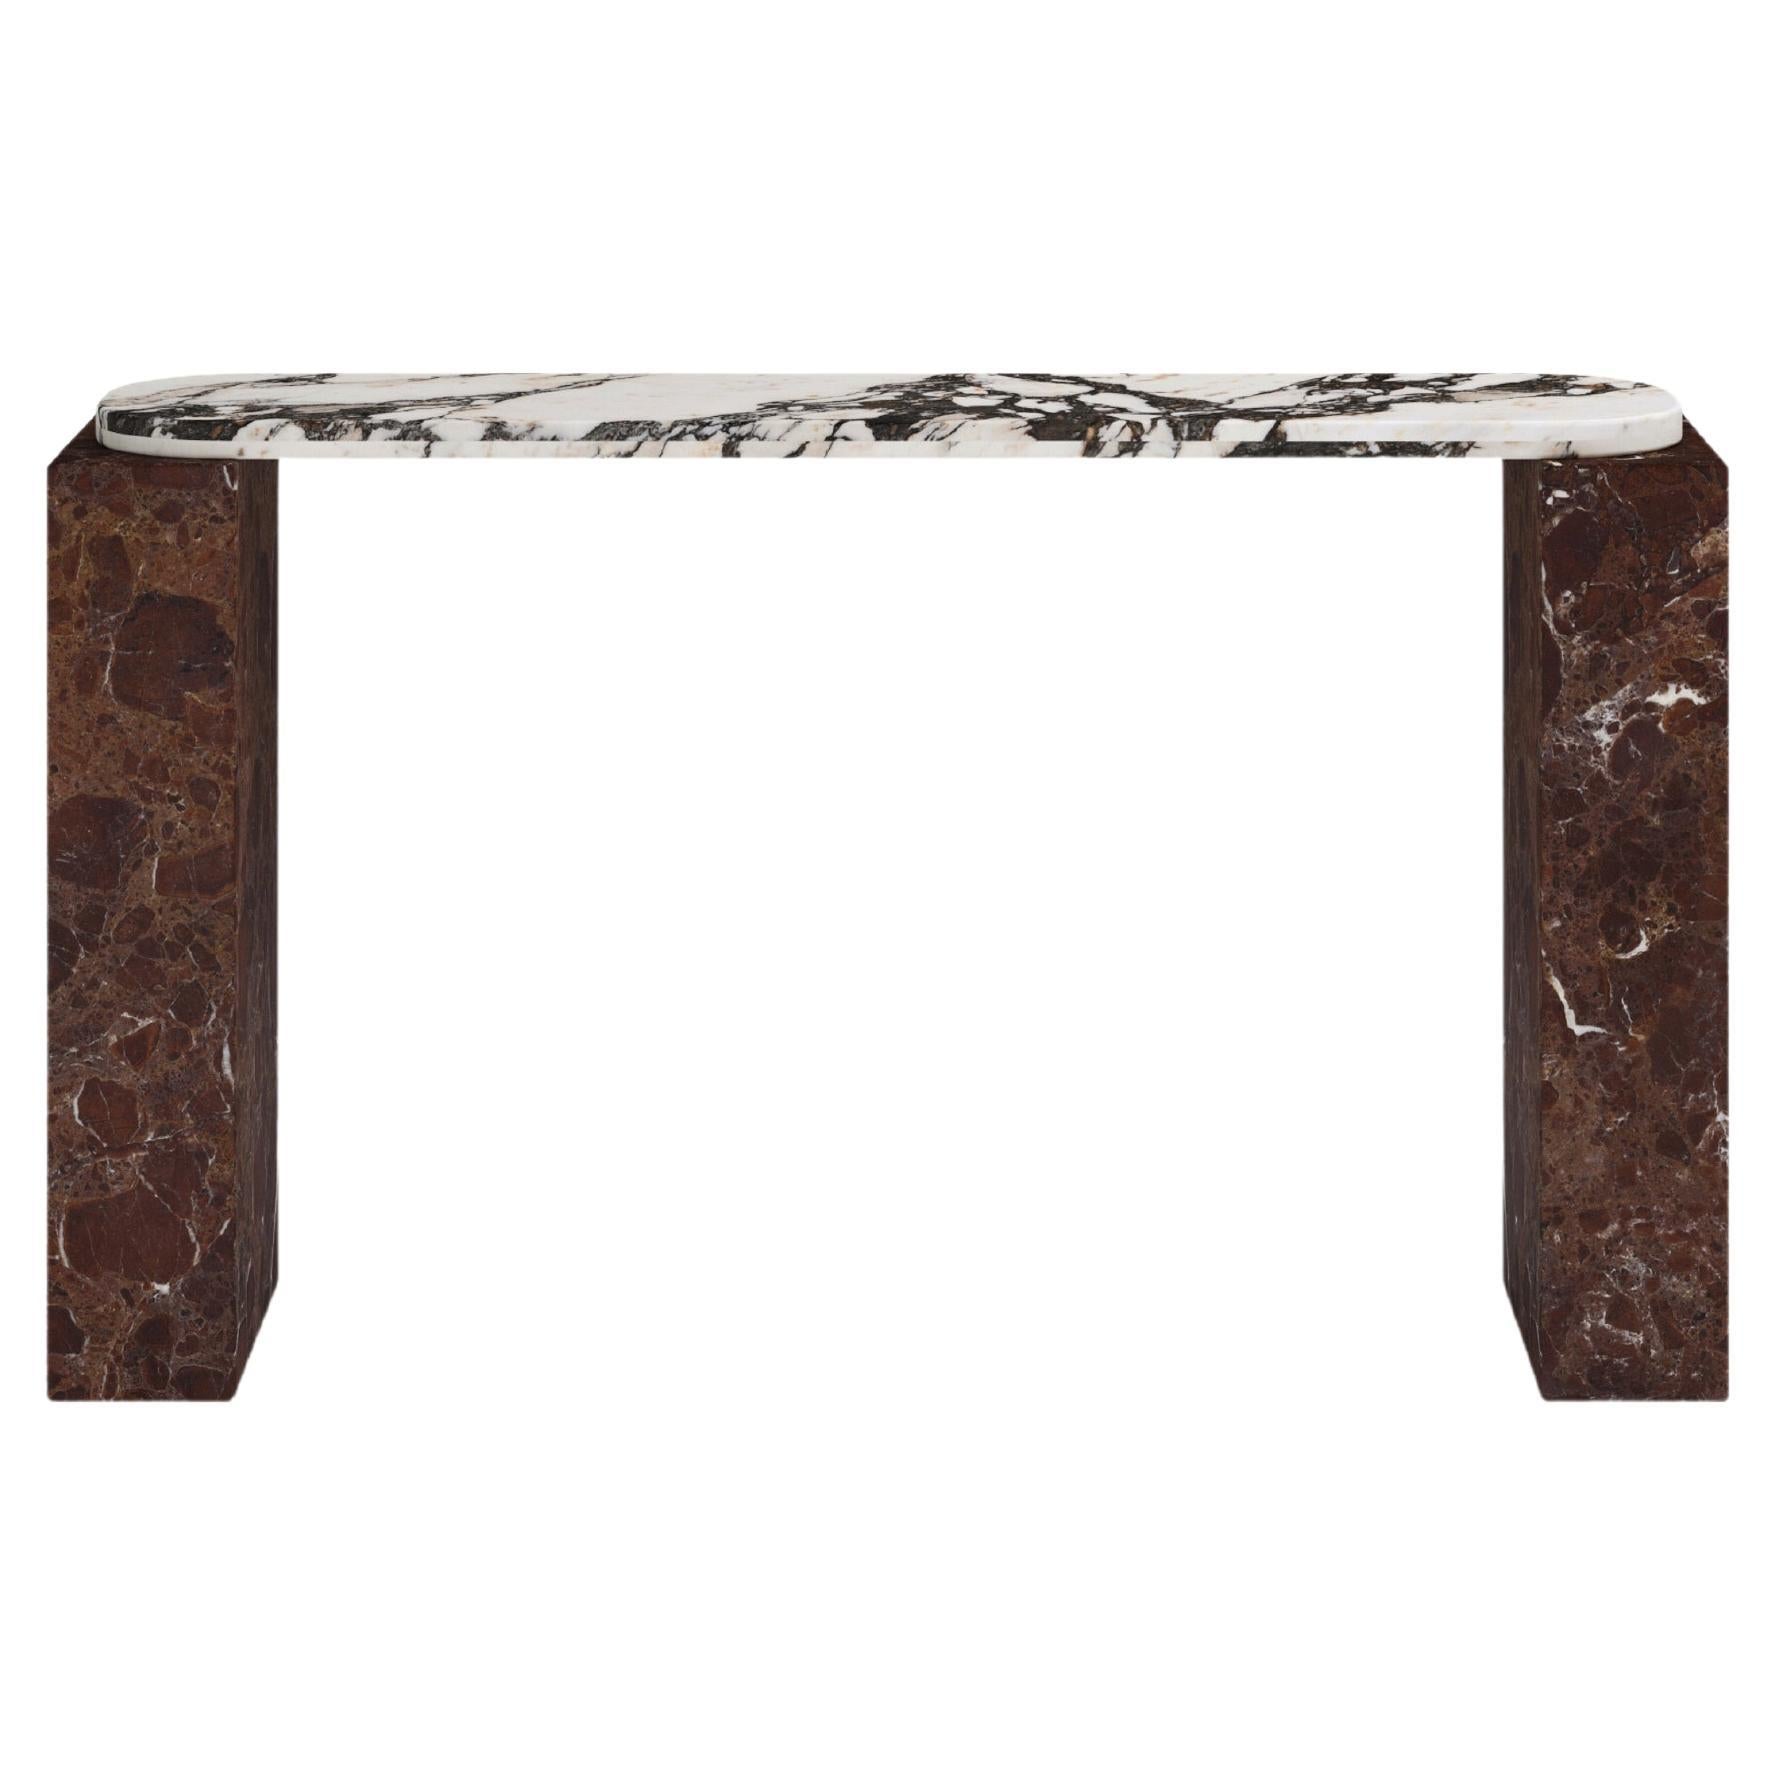 FORM(LA) Cubo Console Table 62”L x 17”W x 36”H Calacatta Viola & Rosso Marble For Sale